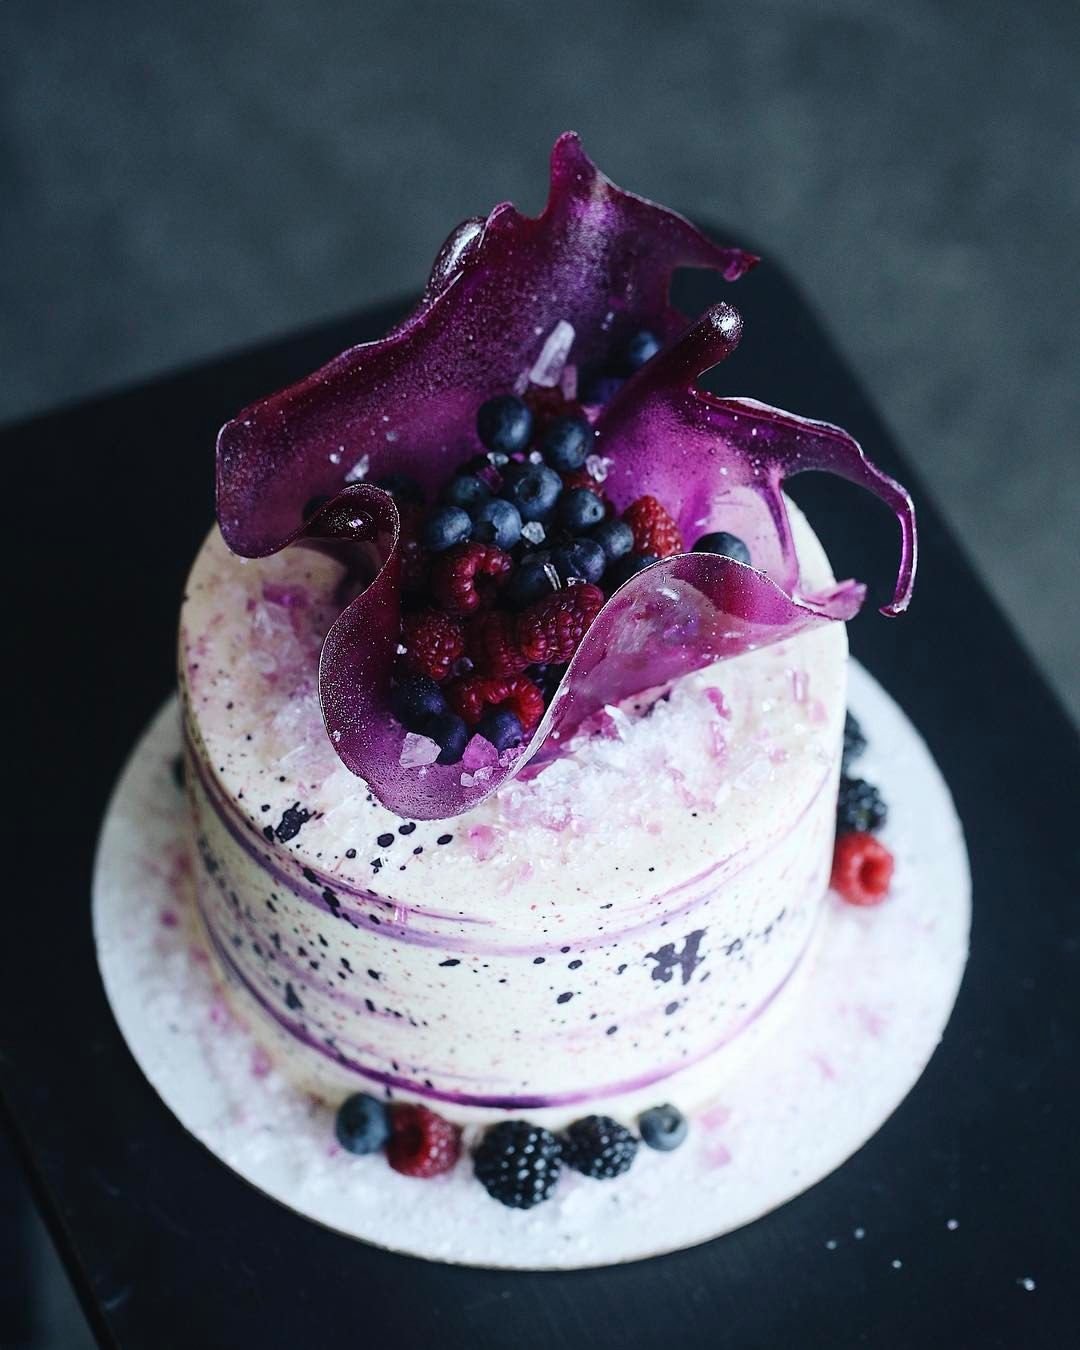 Торт с вазой из изомальта и ягодами фото